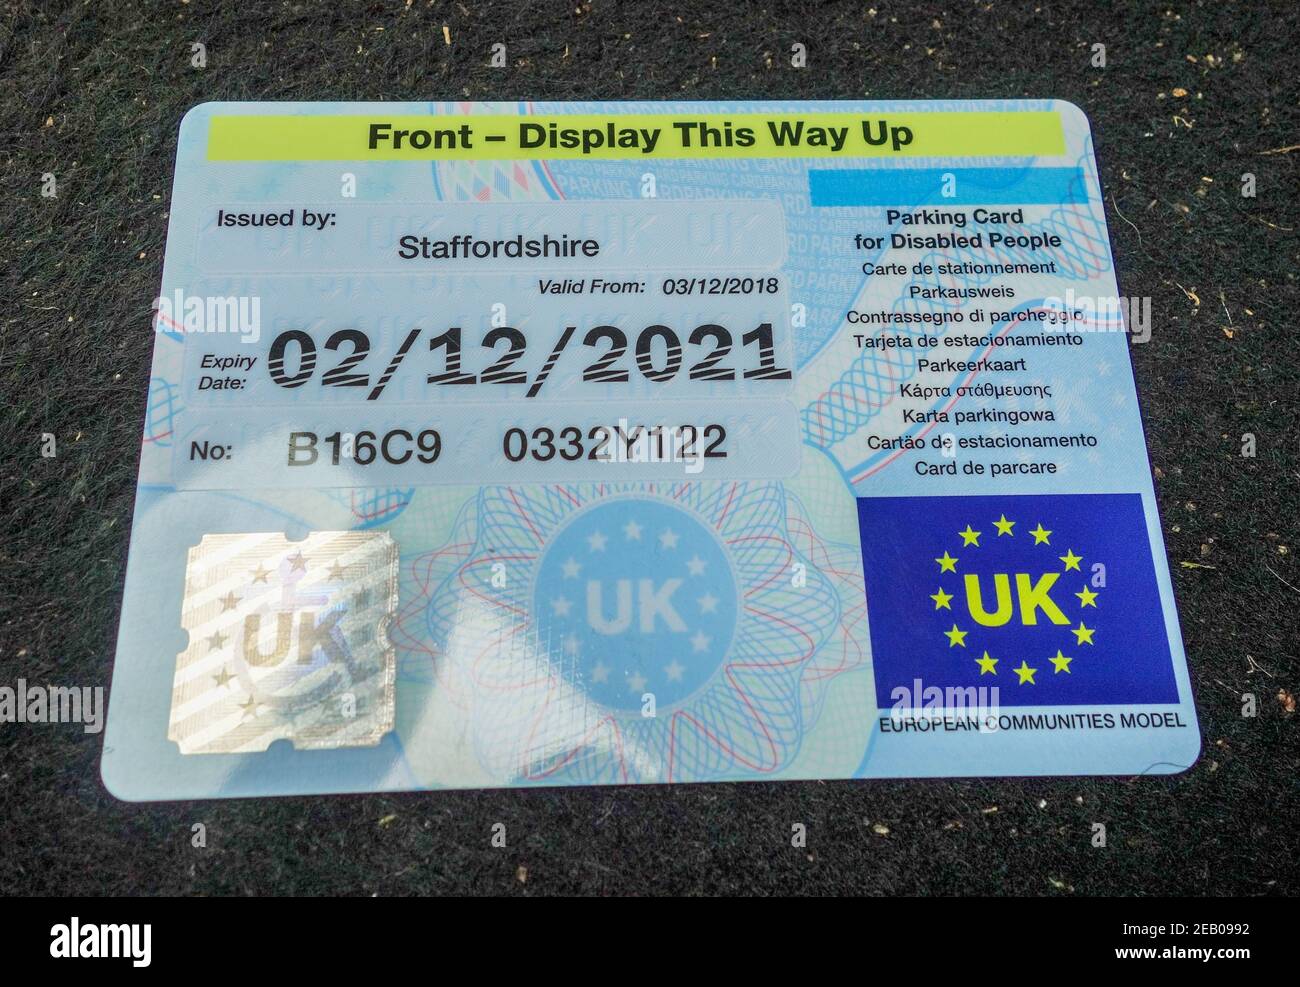 Ein 'Blue Badge' oder Parkkarte für behinderte Menschen, die beim Parken in  der Windschutzscheibe eines Autos gezeigt werden, Staffordshire, England,  Großbritannien Stockfotografie - Alamy